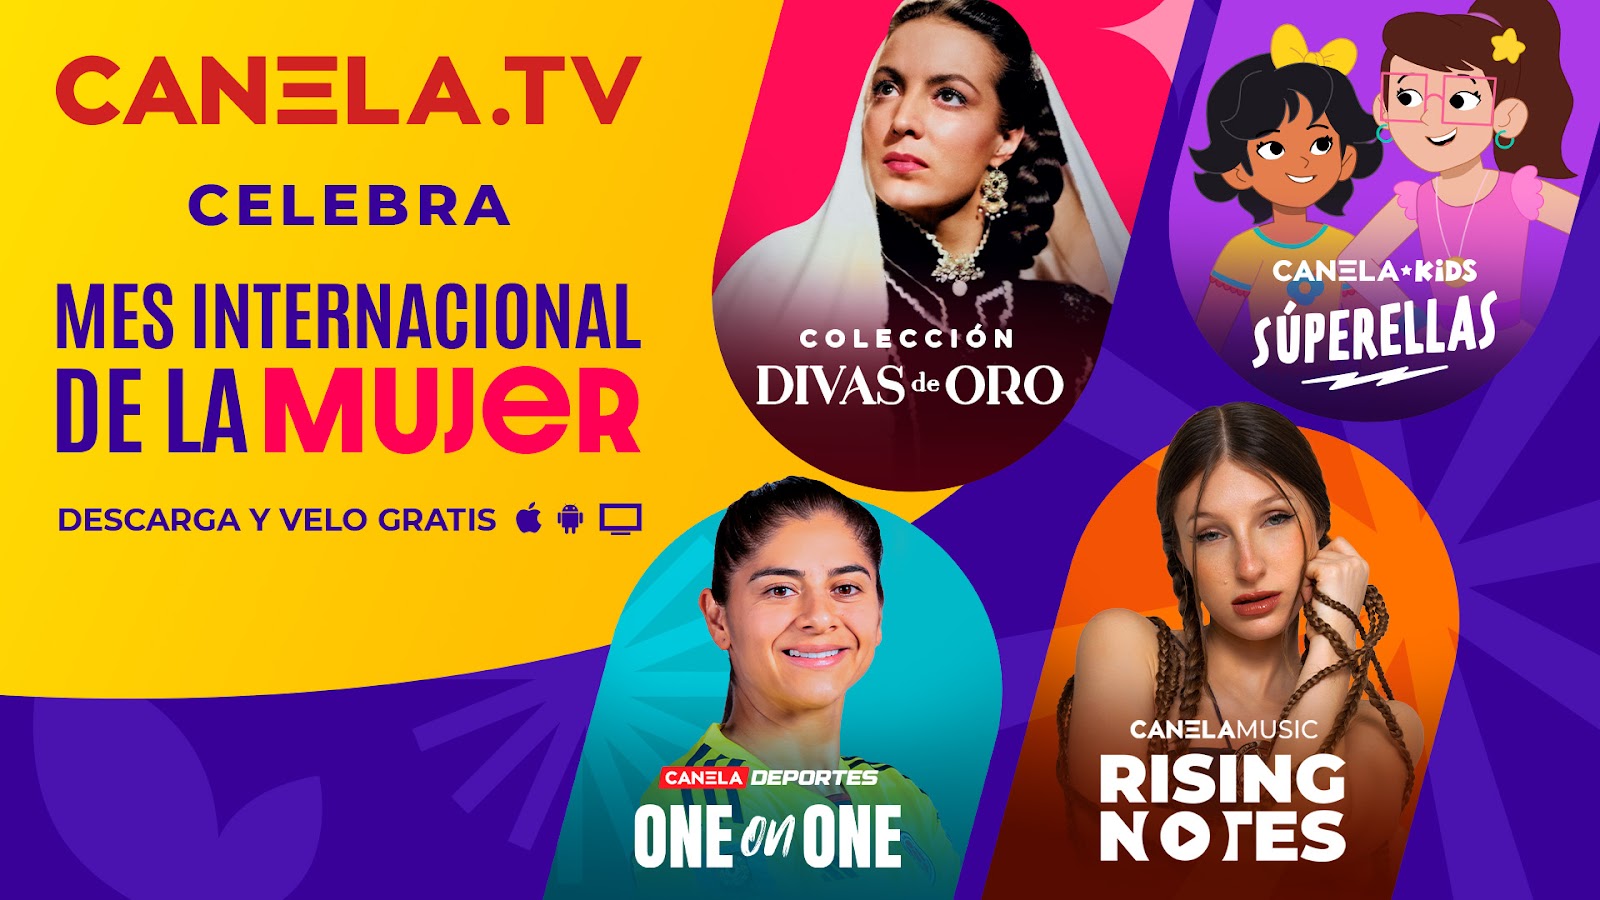 Canela.TV Celebra El Mes Internacional De La Mujer